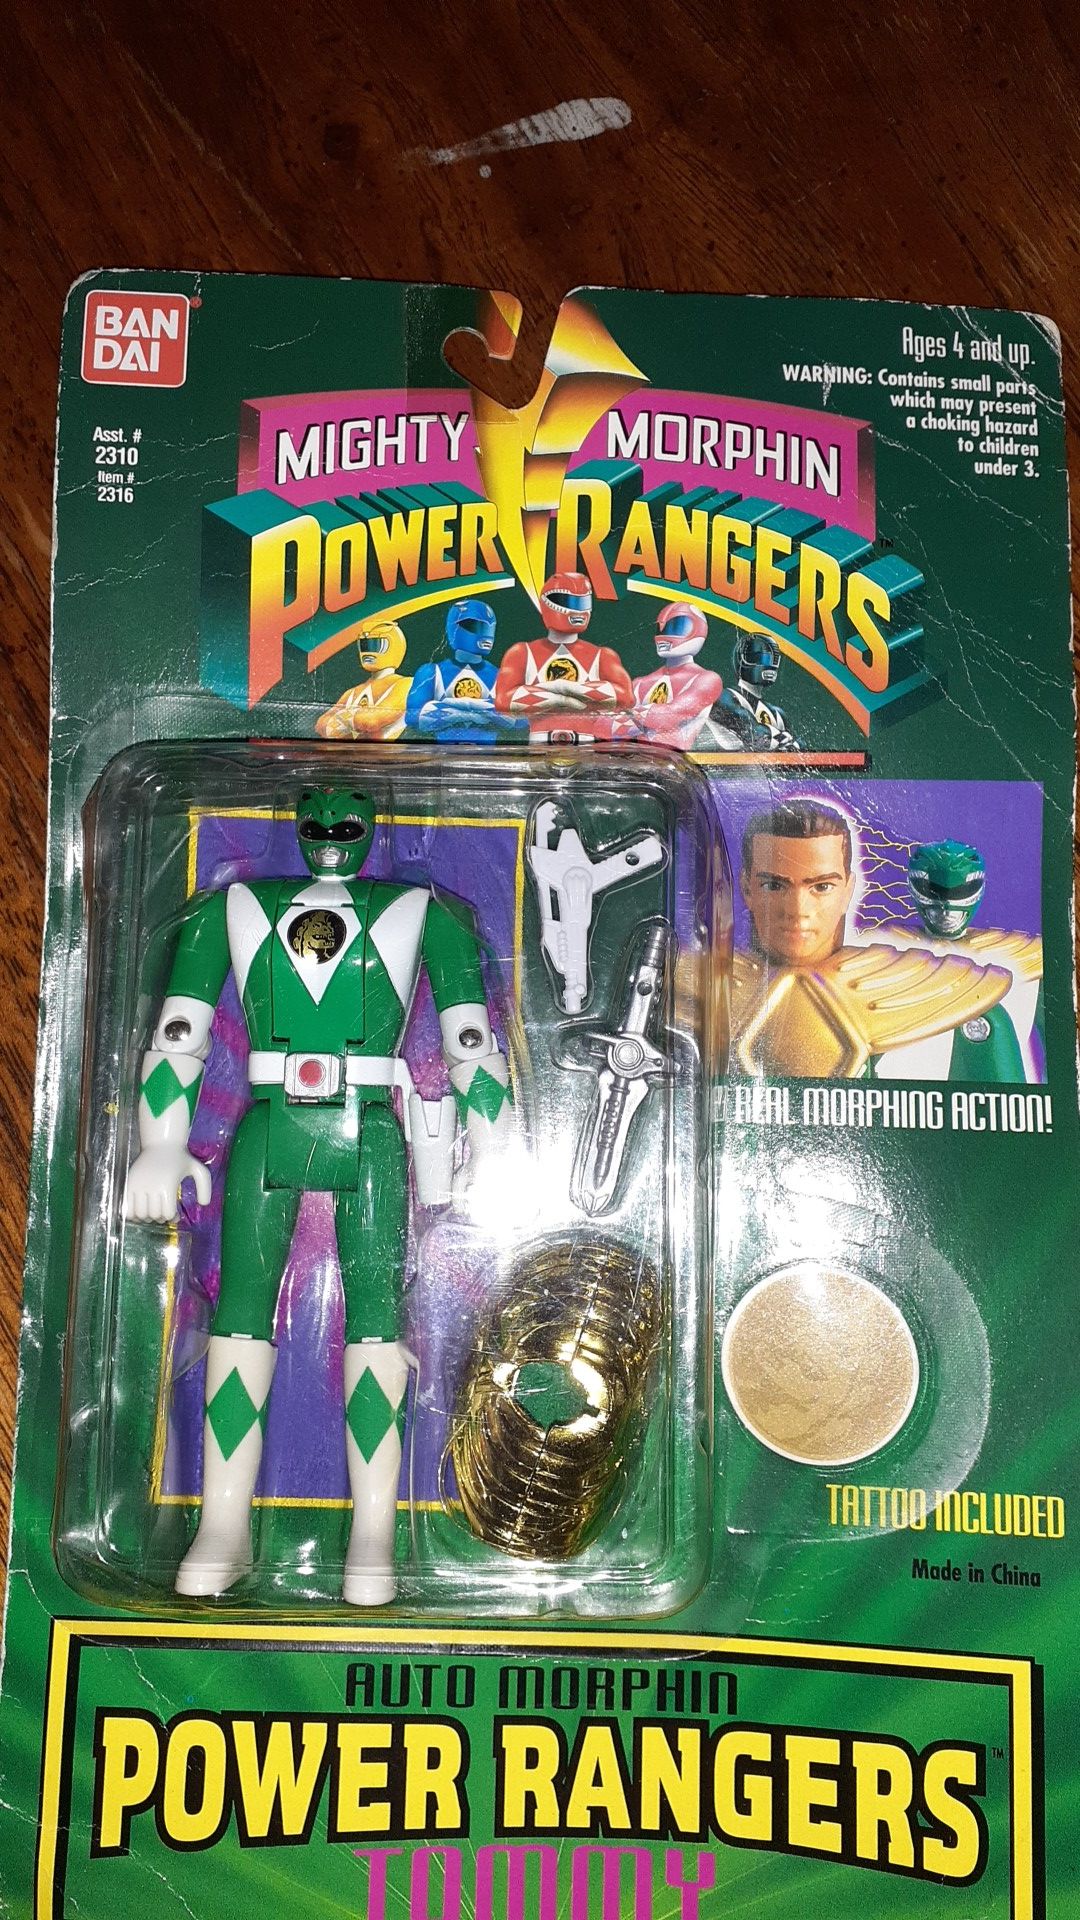 The Green Ranger